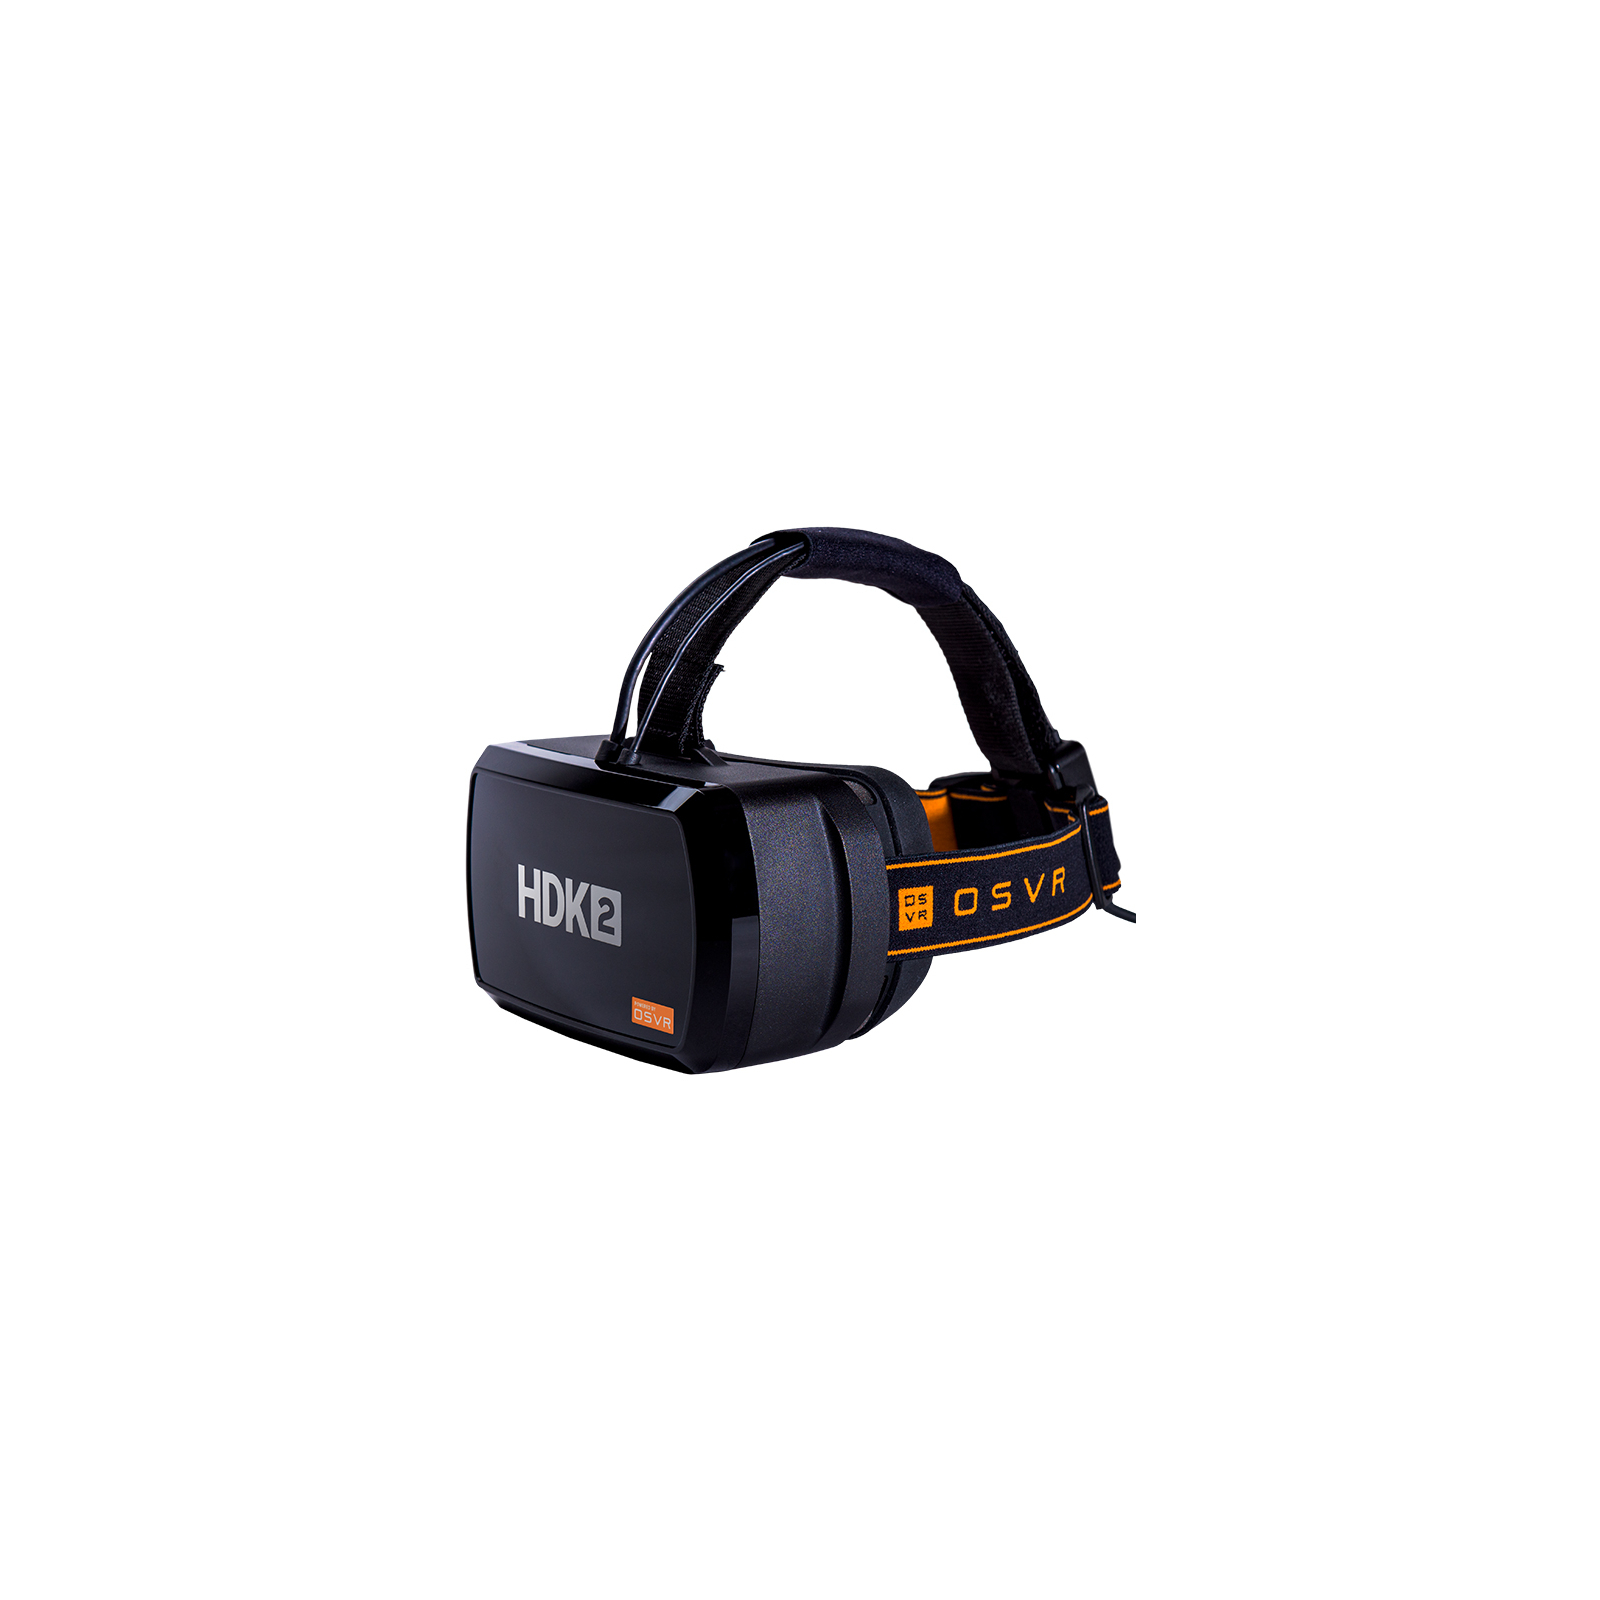 Окуляри віртуальної реальності Razer OPEN SOURCE VIRTUAL REALITY HDK V2 (VR17-B1412000-B3M1)